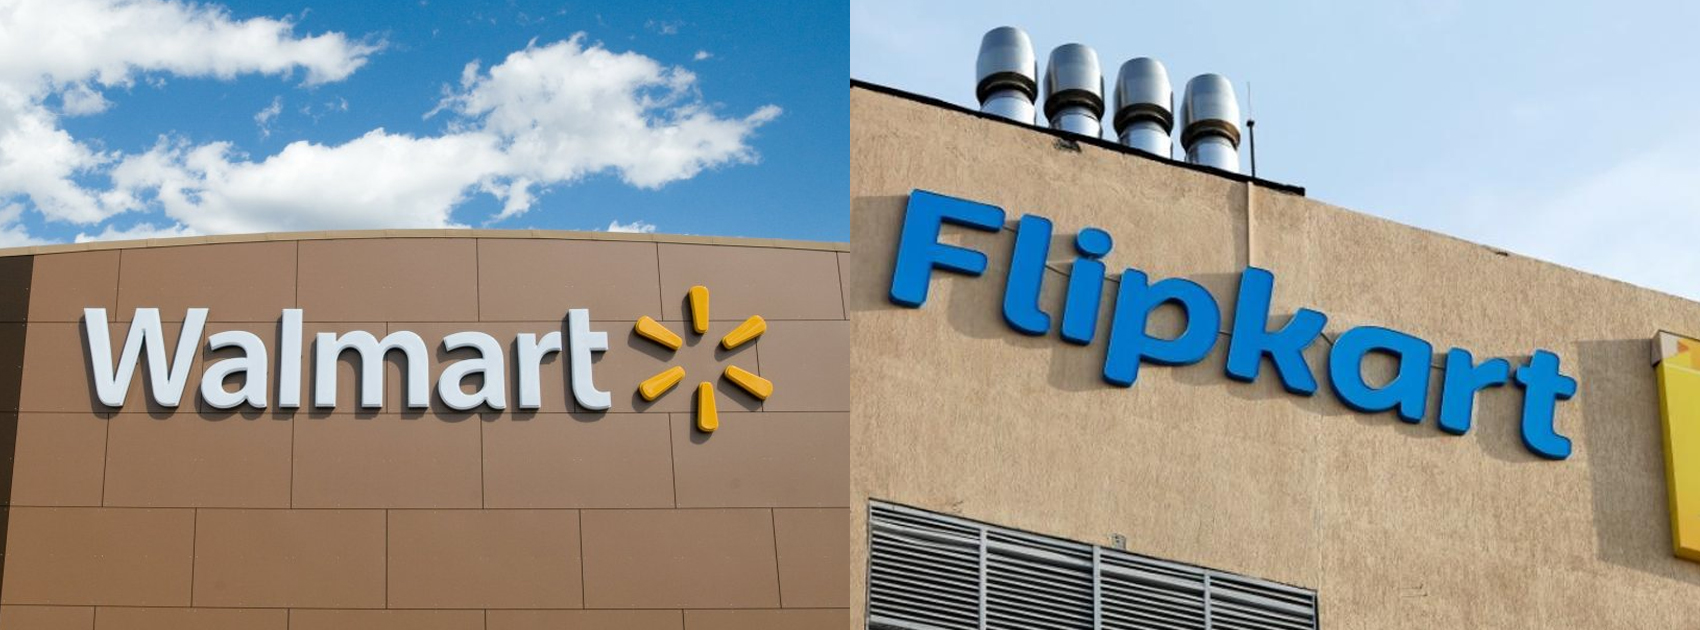 Walmart Get Funds For Flipkart Deal,Startup Stories,Startup News India,Latest Business News 2018,Walmart Flipkart Deal,Walmart Funding News,India Largest Online Retailer,Walmart Flipkart Deal Latest News,Flipkart Business News,Largest E-commerce Deal